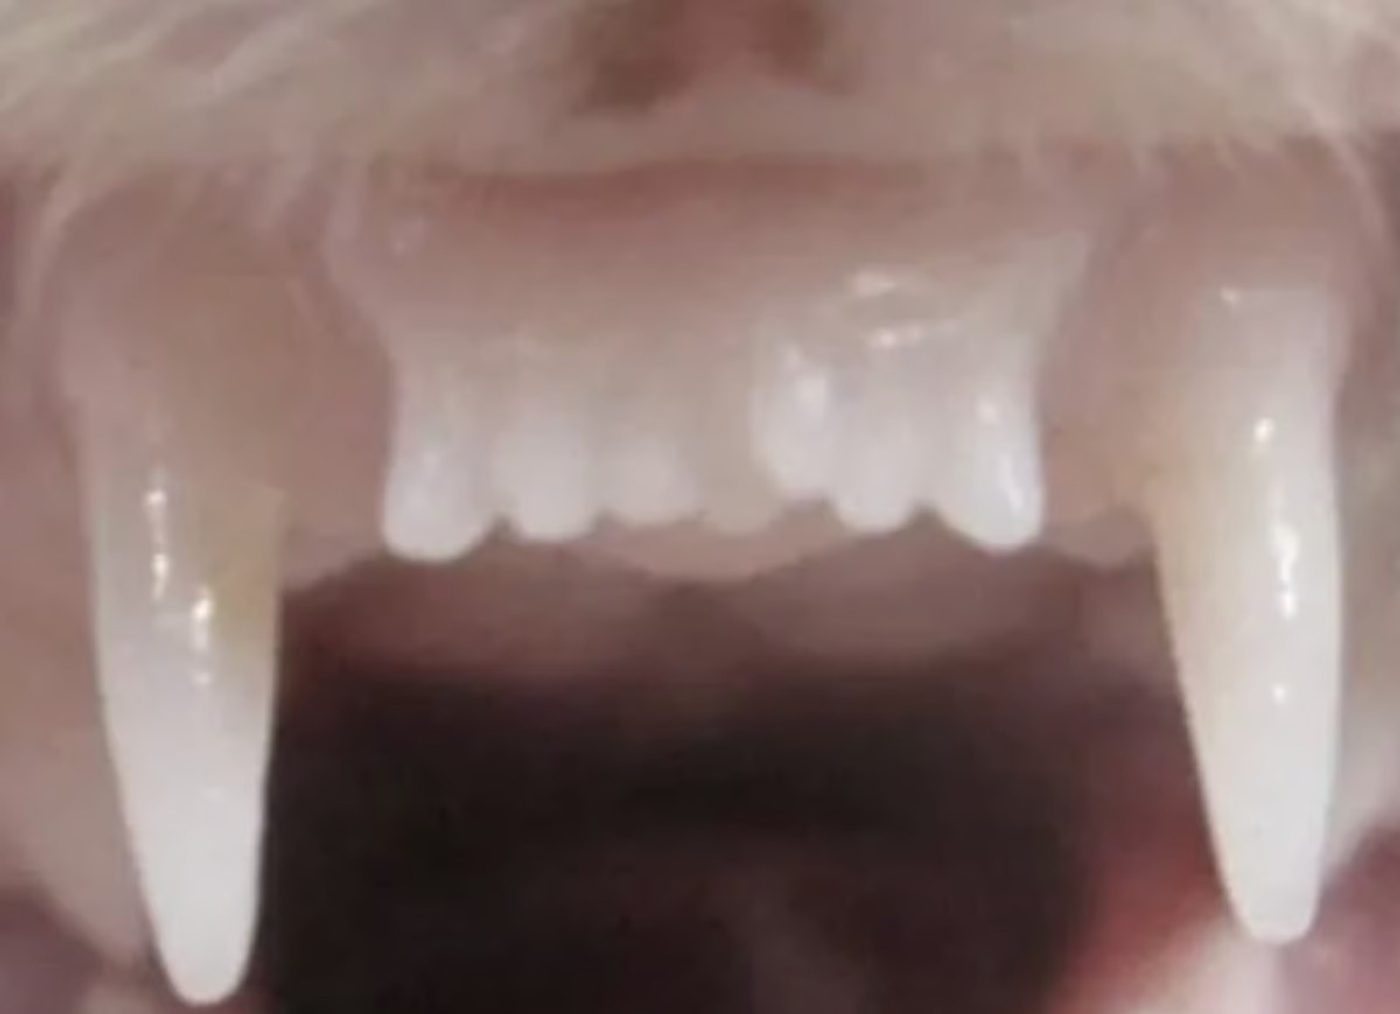 Kaybedilen Dişler İçin Umut Işığı: Diş Çıkaran İlaç İçin İnsanlı Deneyler Başladı